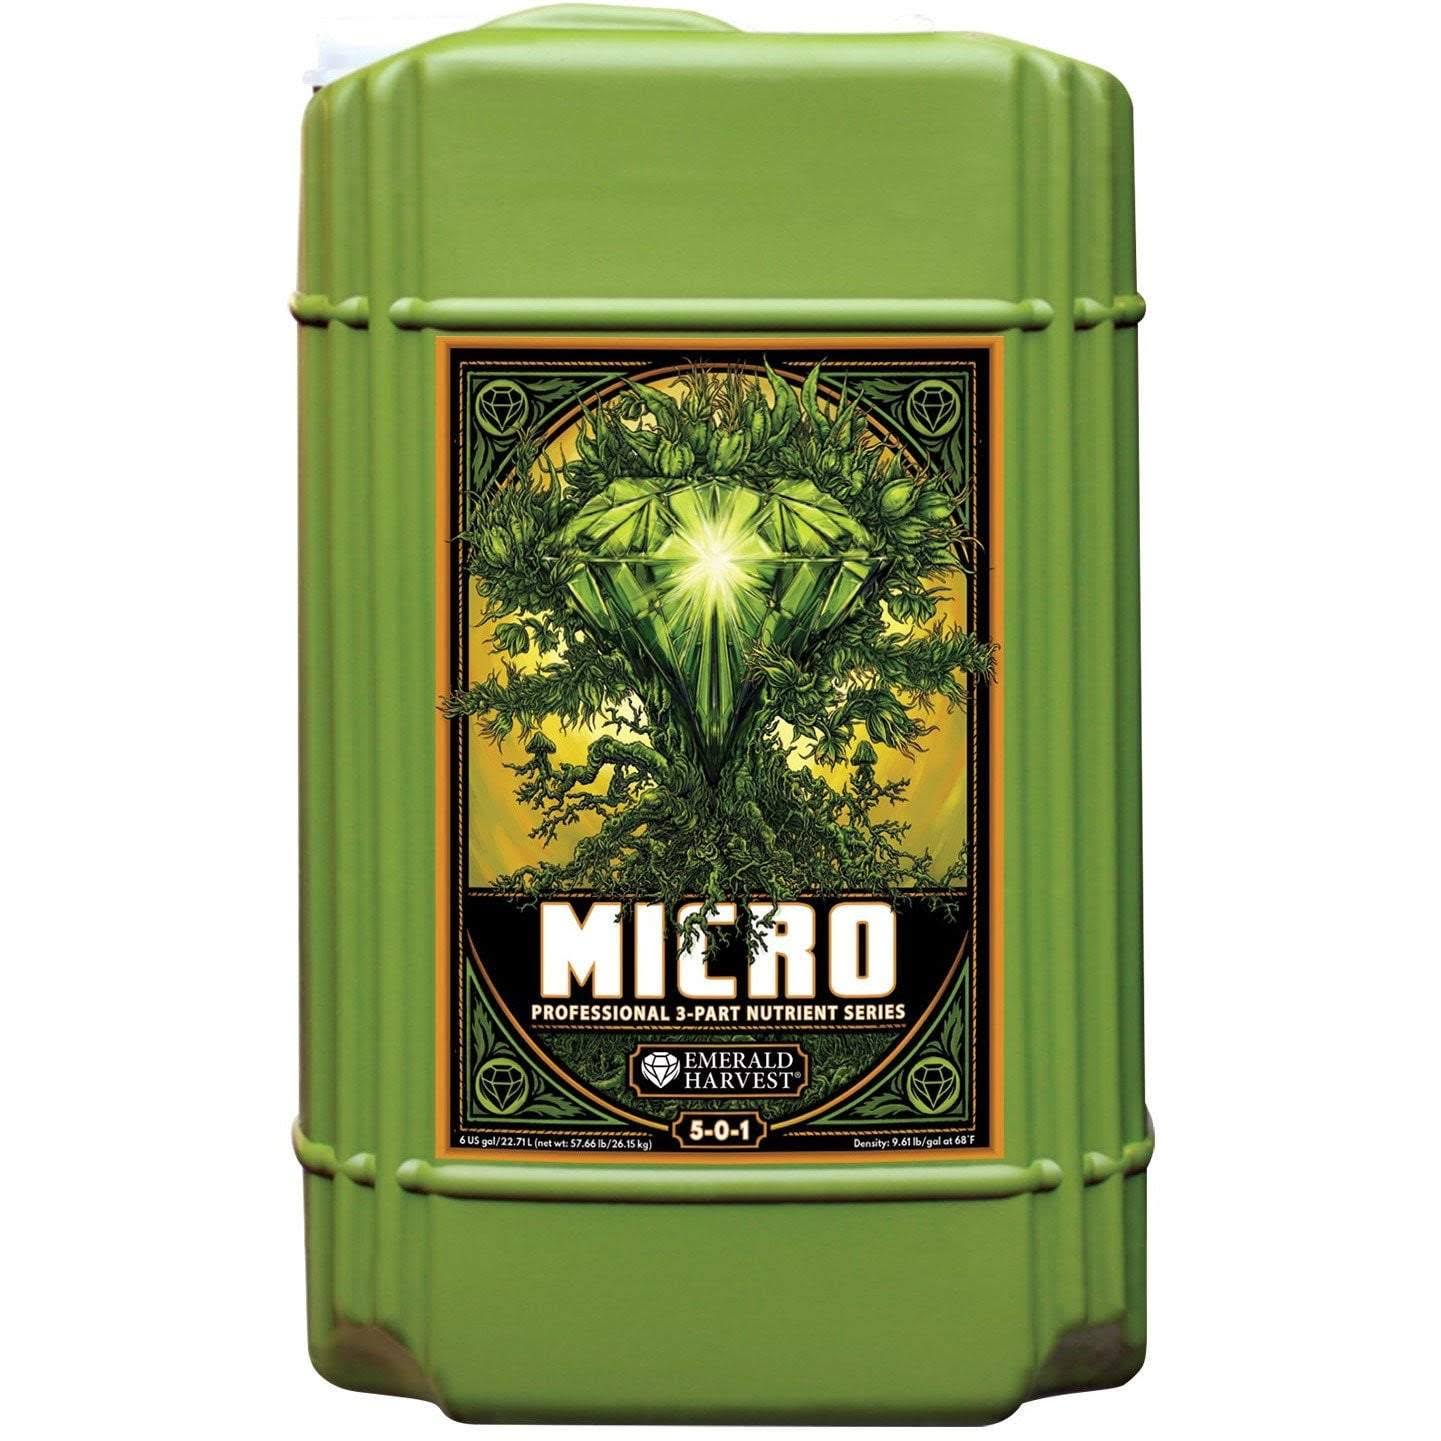 Emerald Harvest Micro 6 Gallon/22.7 Liter